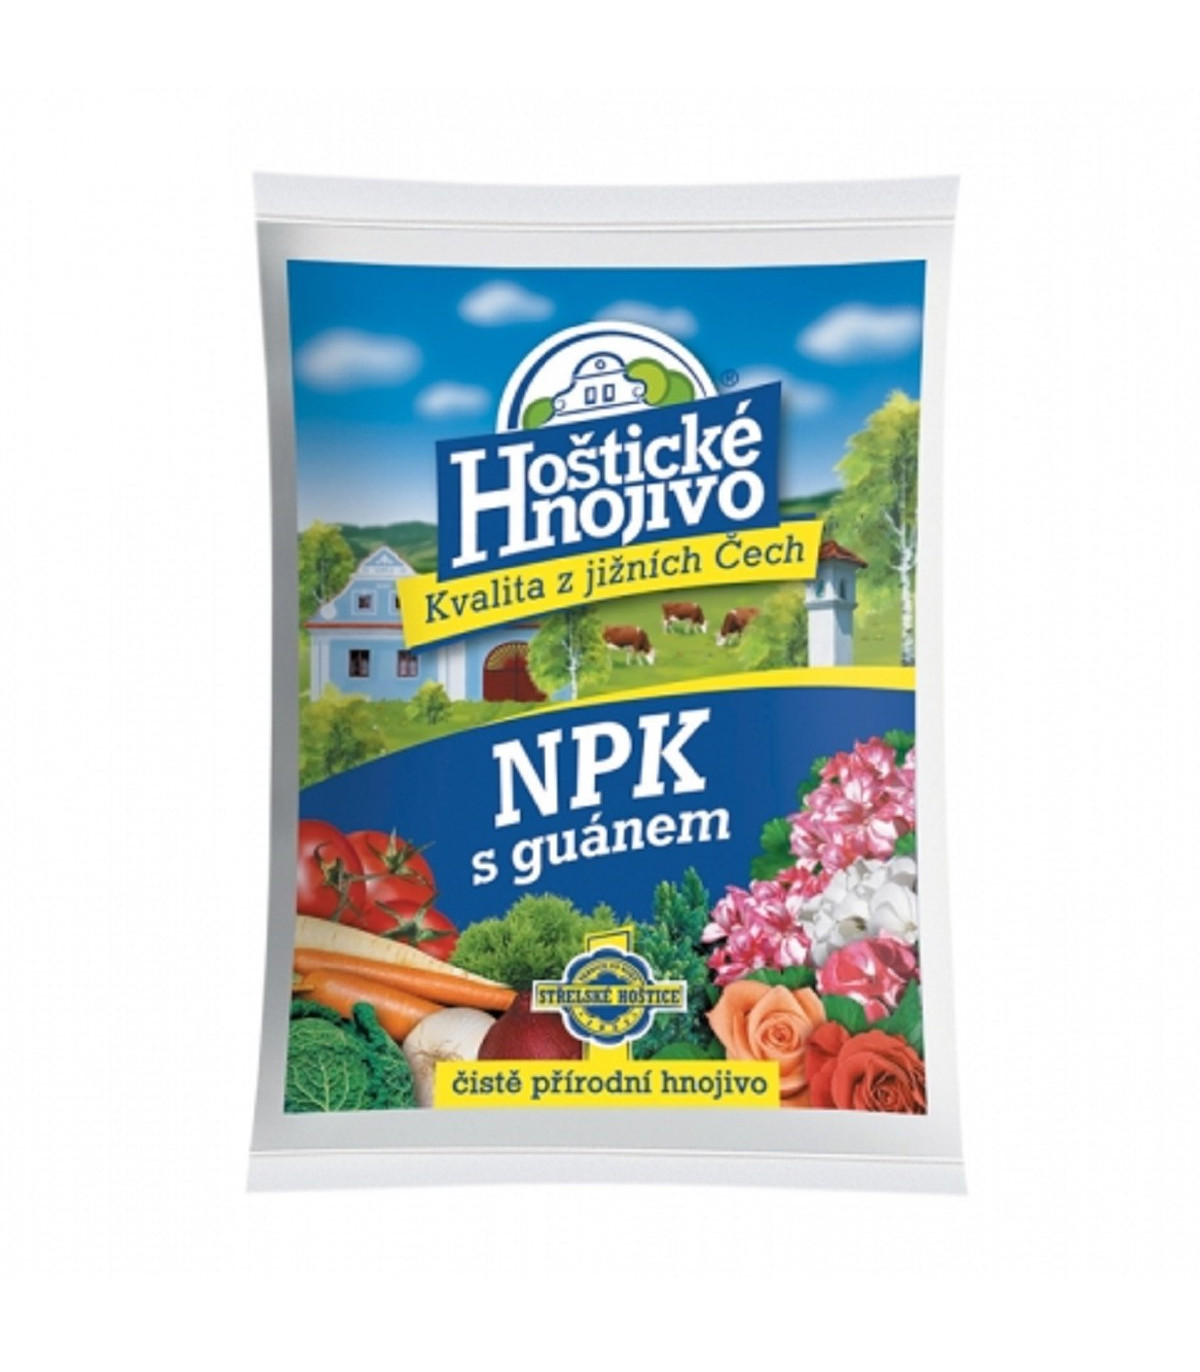 NPK s guánem - Hoštické hnojivo - prodej hnojiv - 1 kg